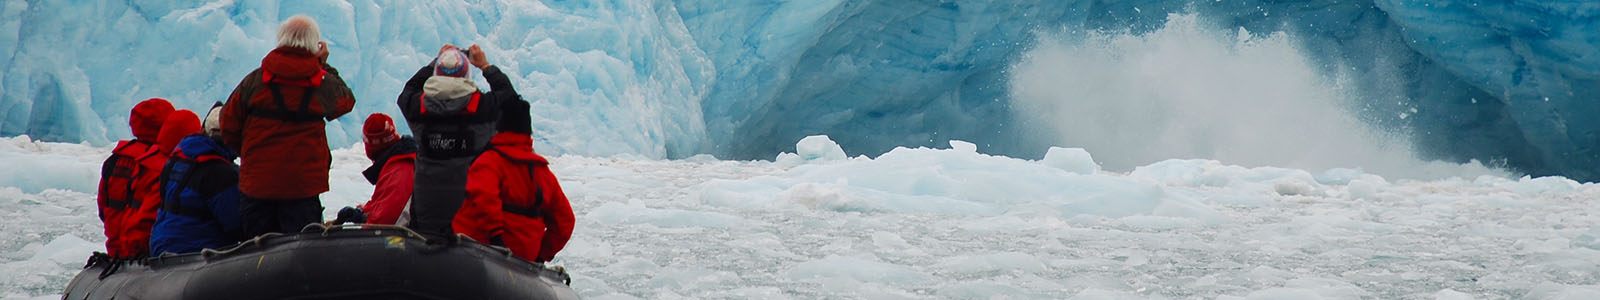 Paklijst Spitsbergen: Wat neem je mee?